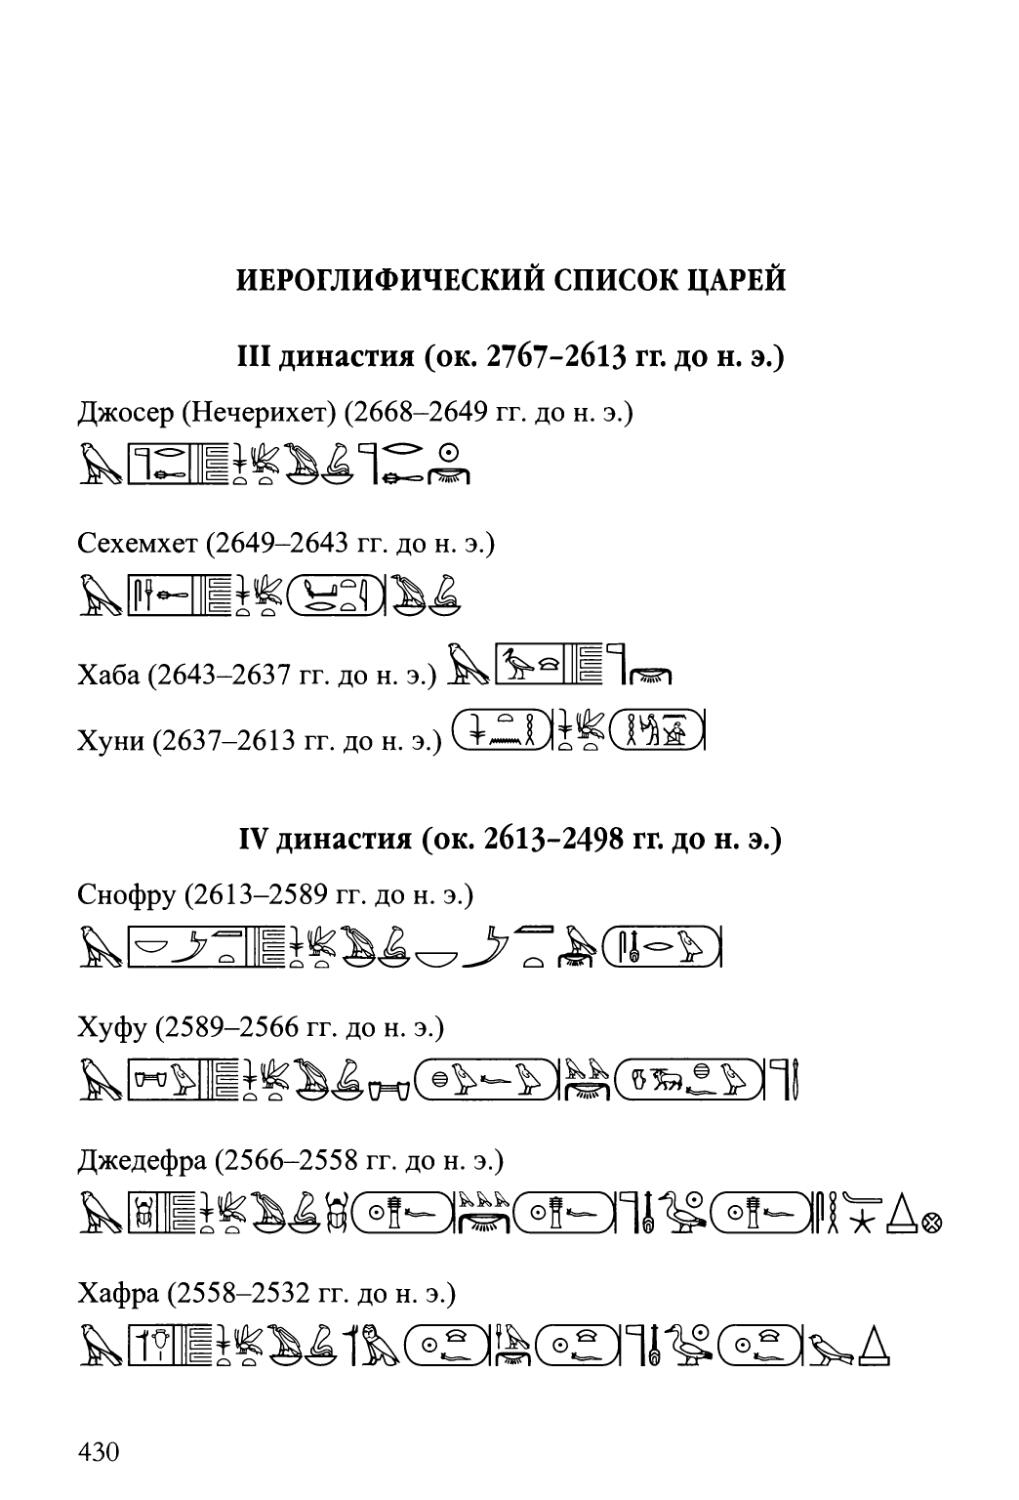 Иероглифический список царей